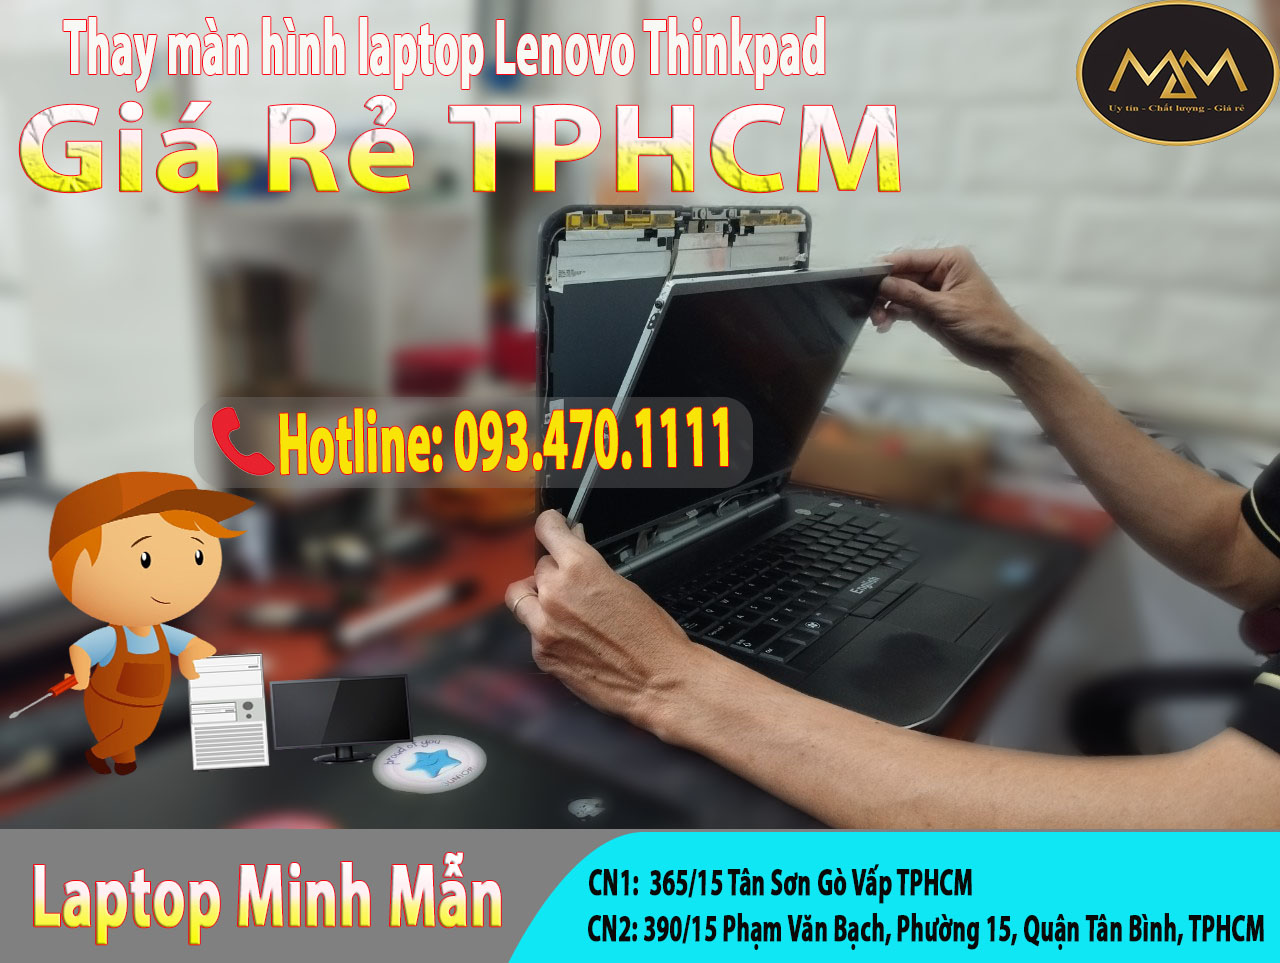 Thay-màn-hình-laptop-Lenovo-Thinkpad-giá-rẻ-tphcm